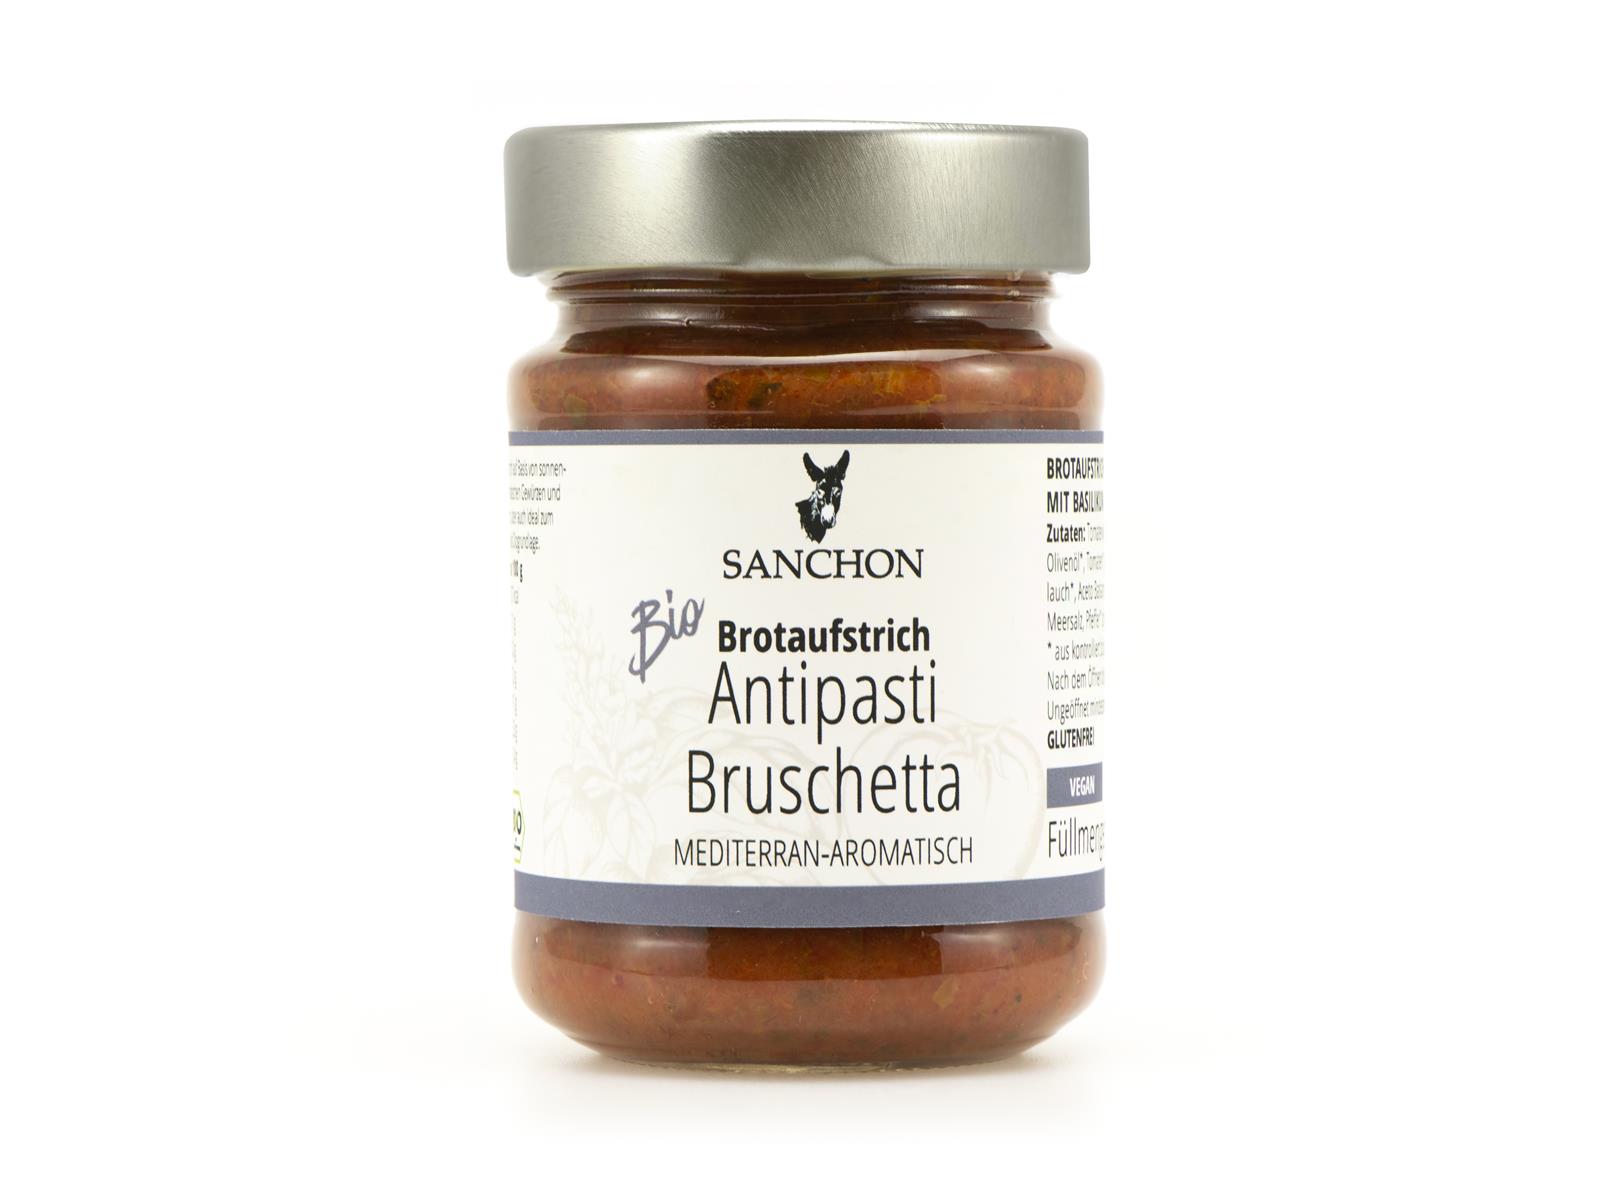 Sanchon Brotaufstrich Antipasti Bruschetta 190 g